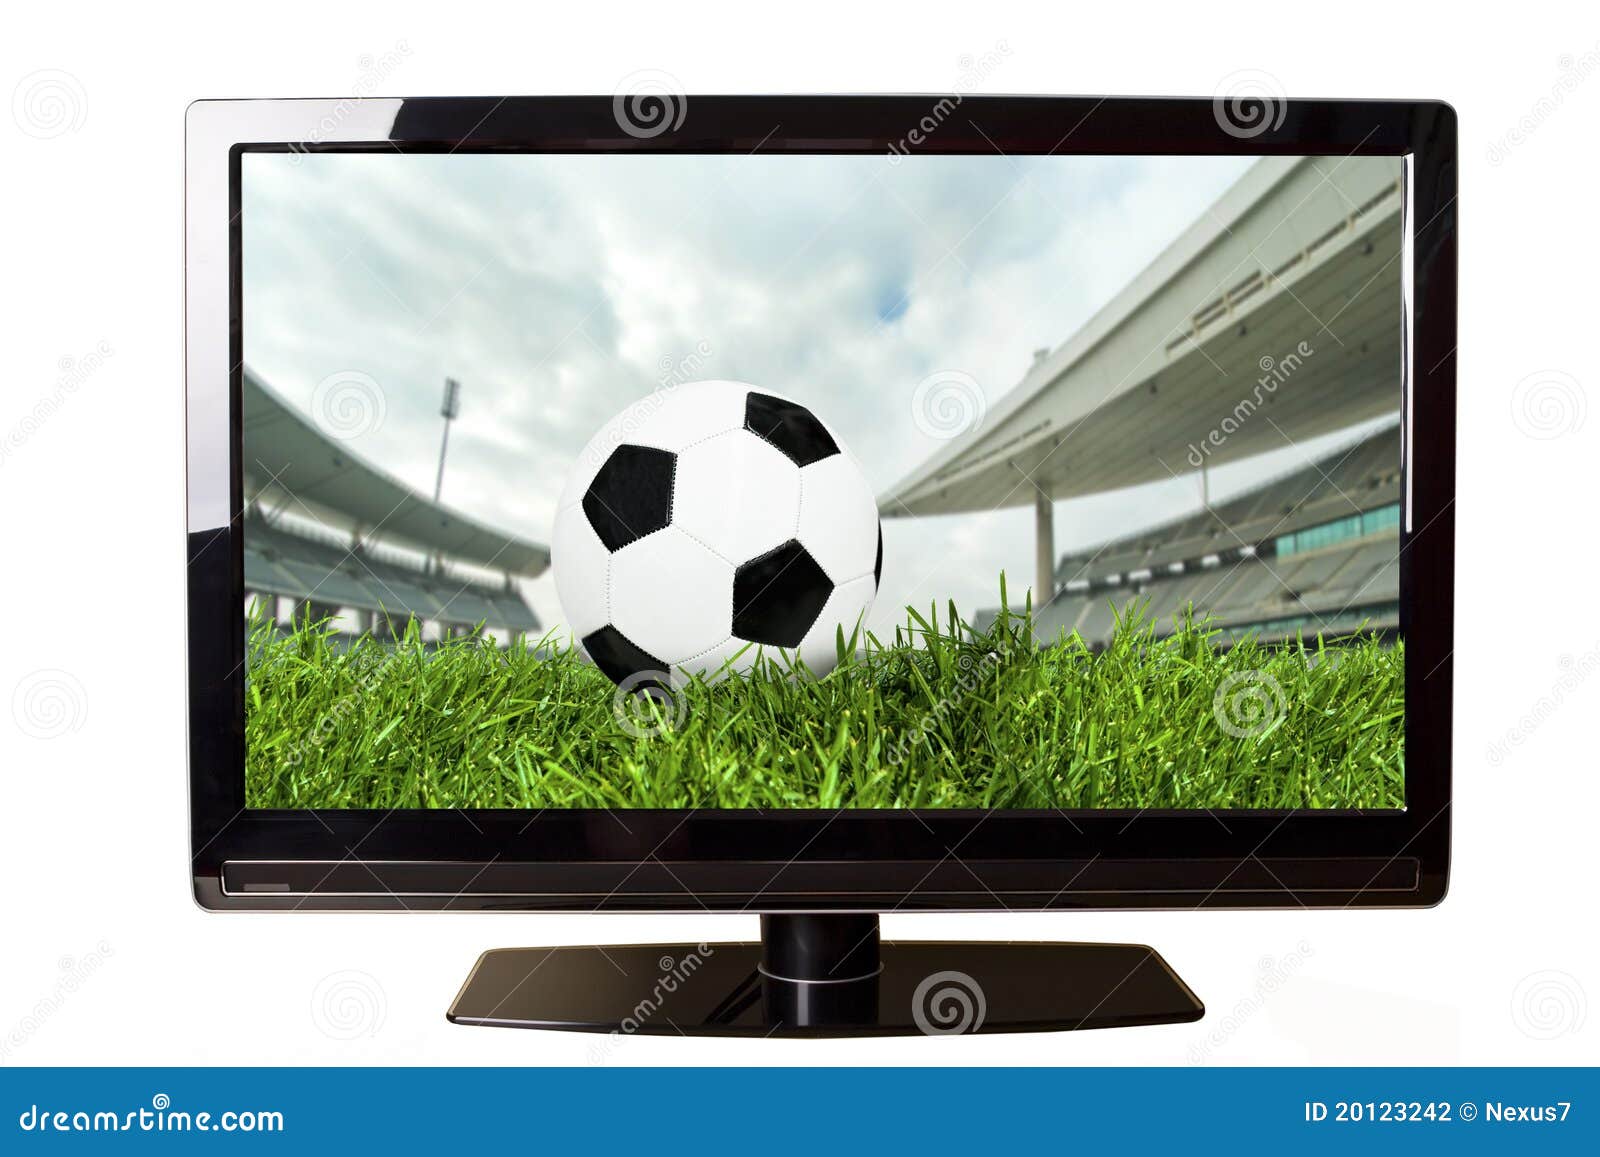 Soccer on TV stock photo